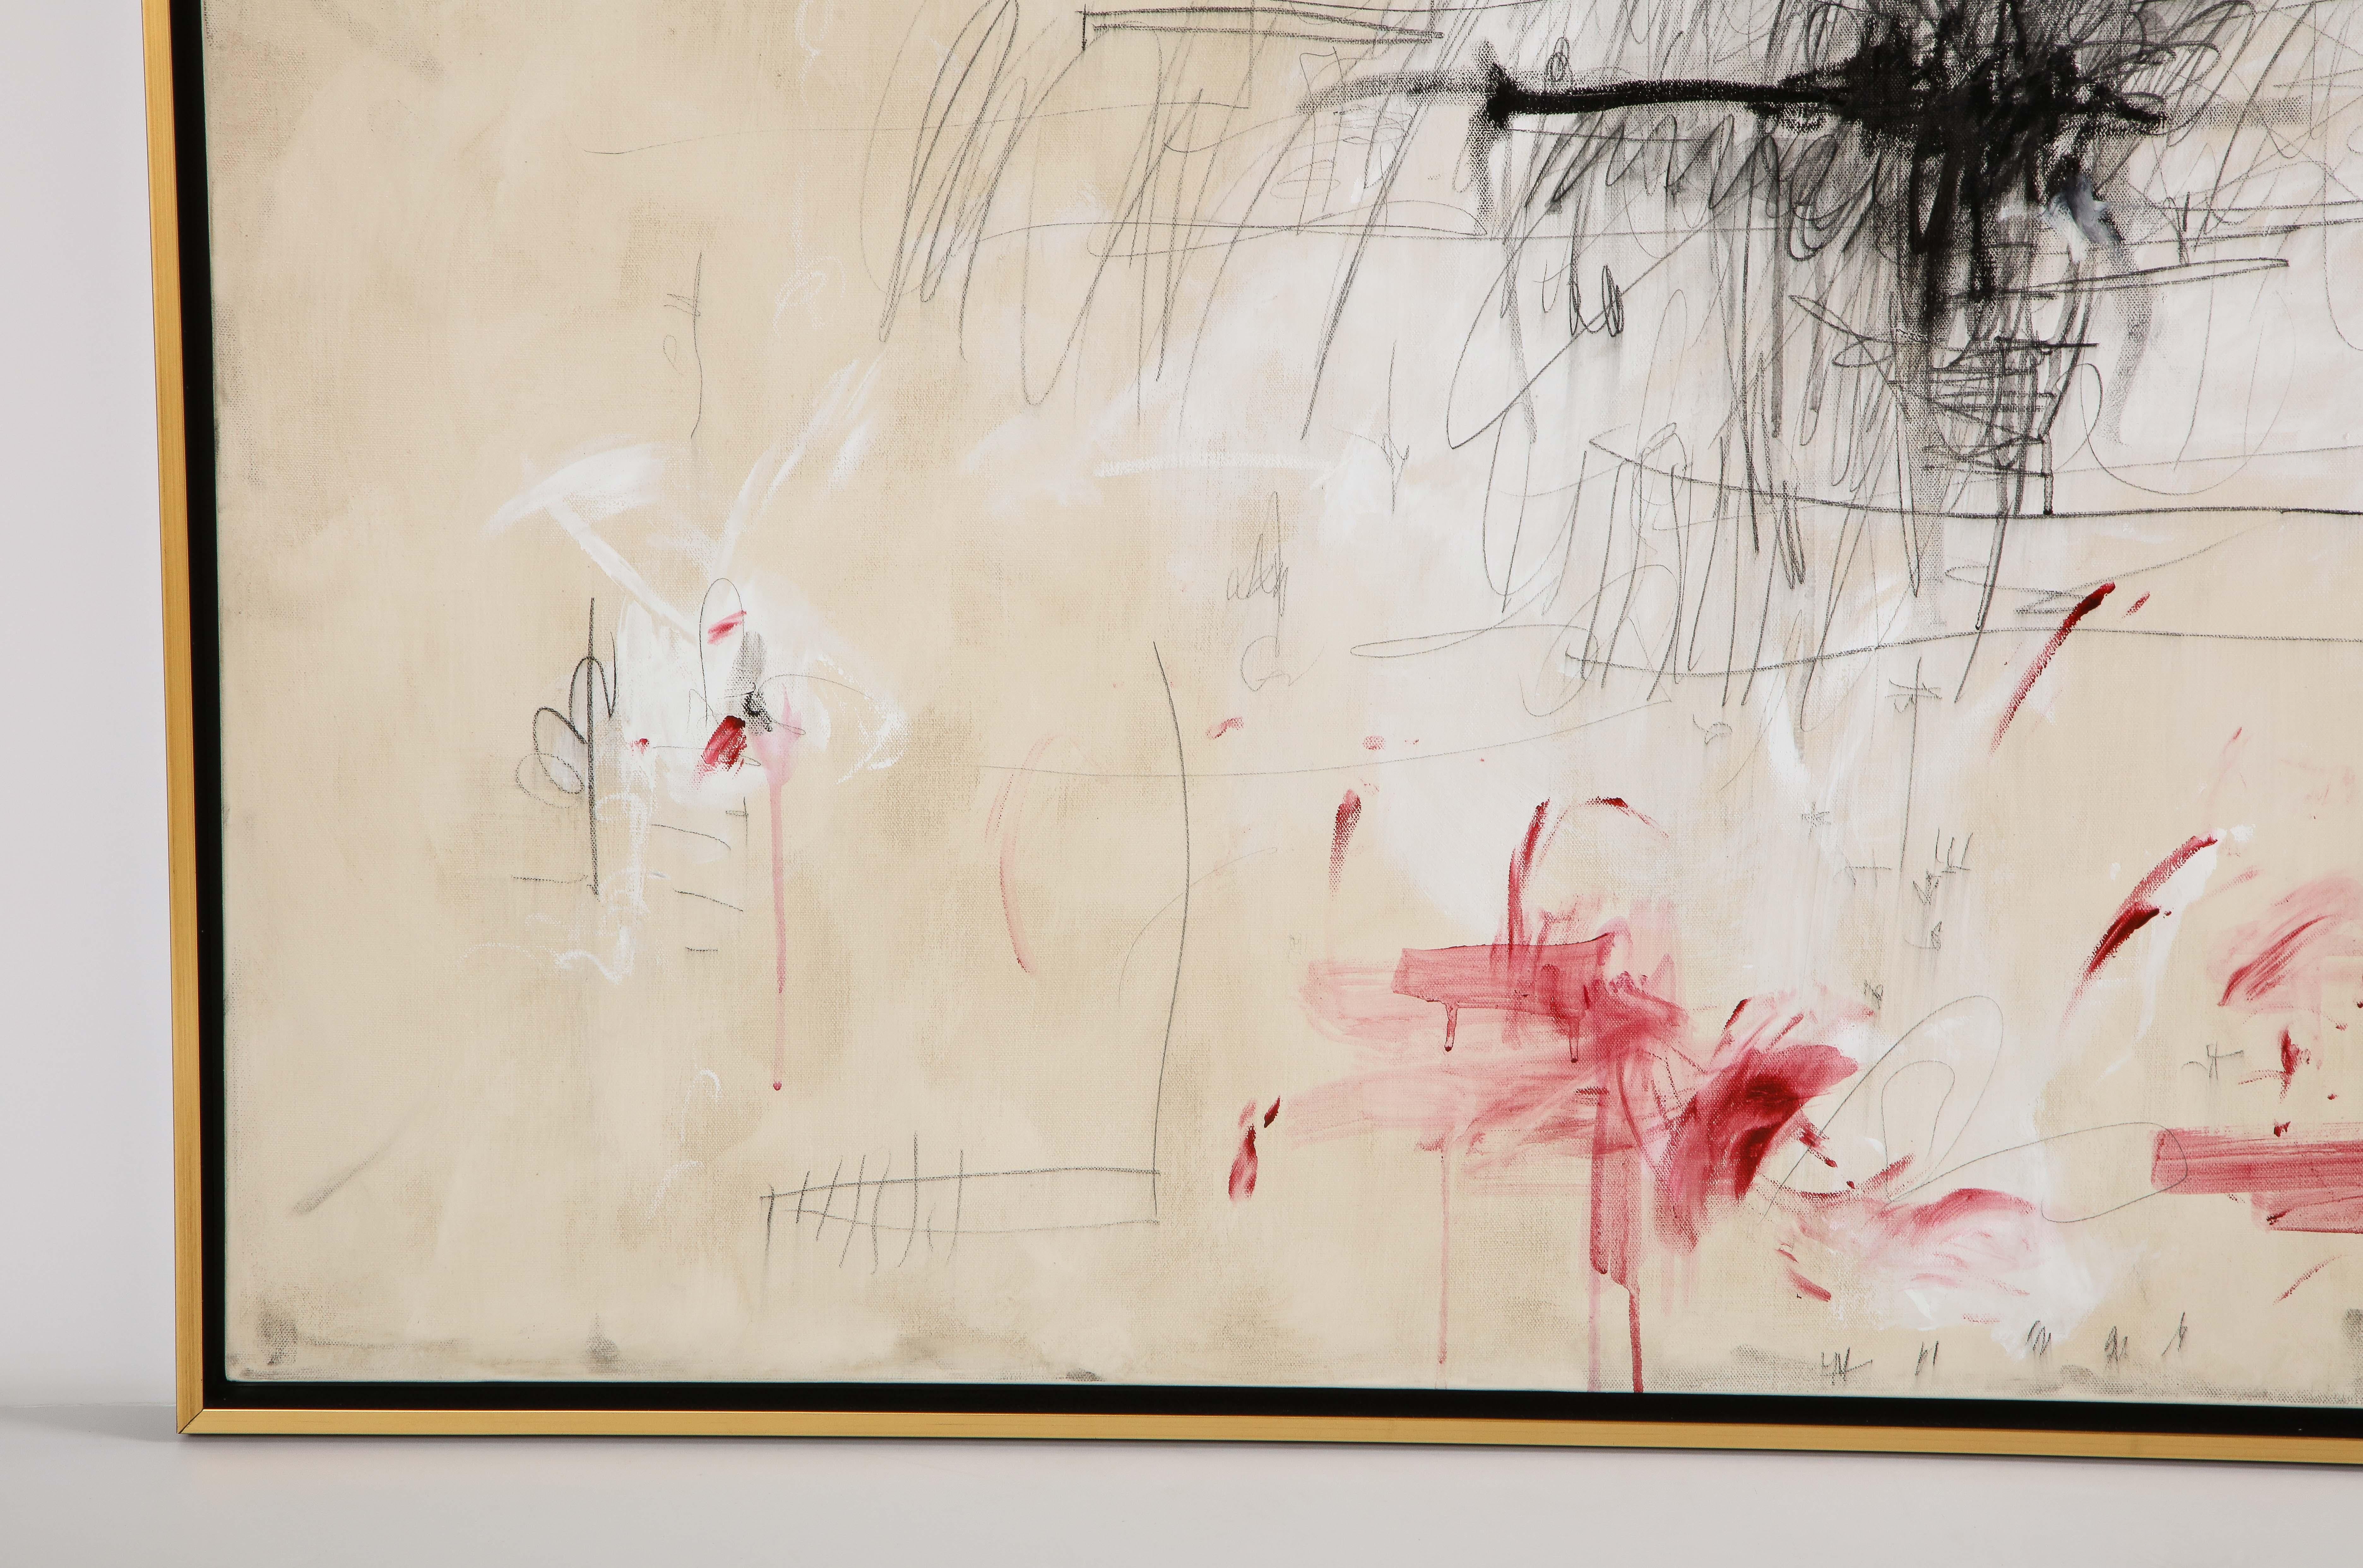 Großes Gemälde „Amore“ in Elfenbein-:: Weiß-:: Schwarz- und Rottönen:: 2::44 m x 3::66 m (Grau), Abstract Painting, von Karina Gentinetta